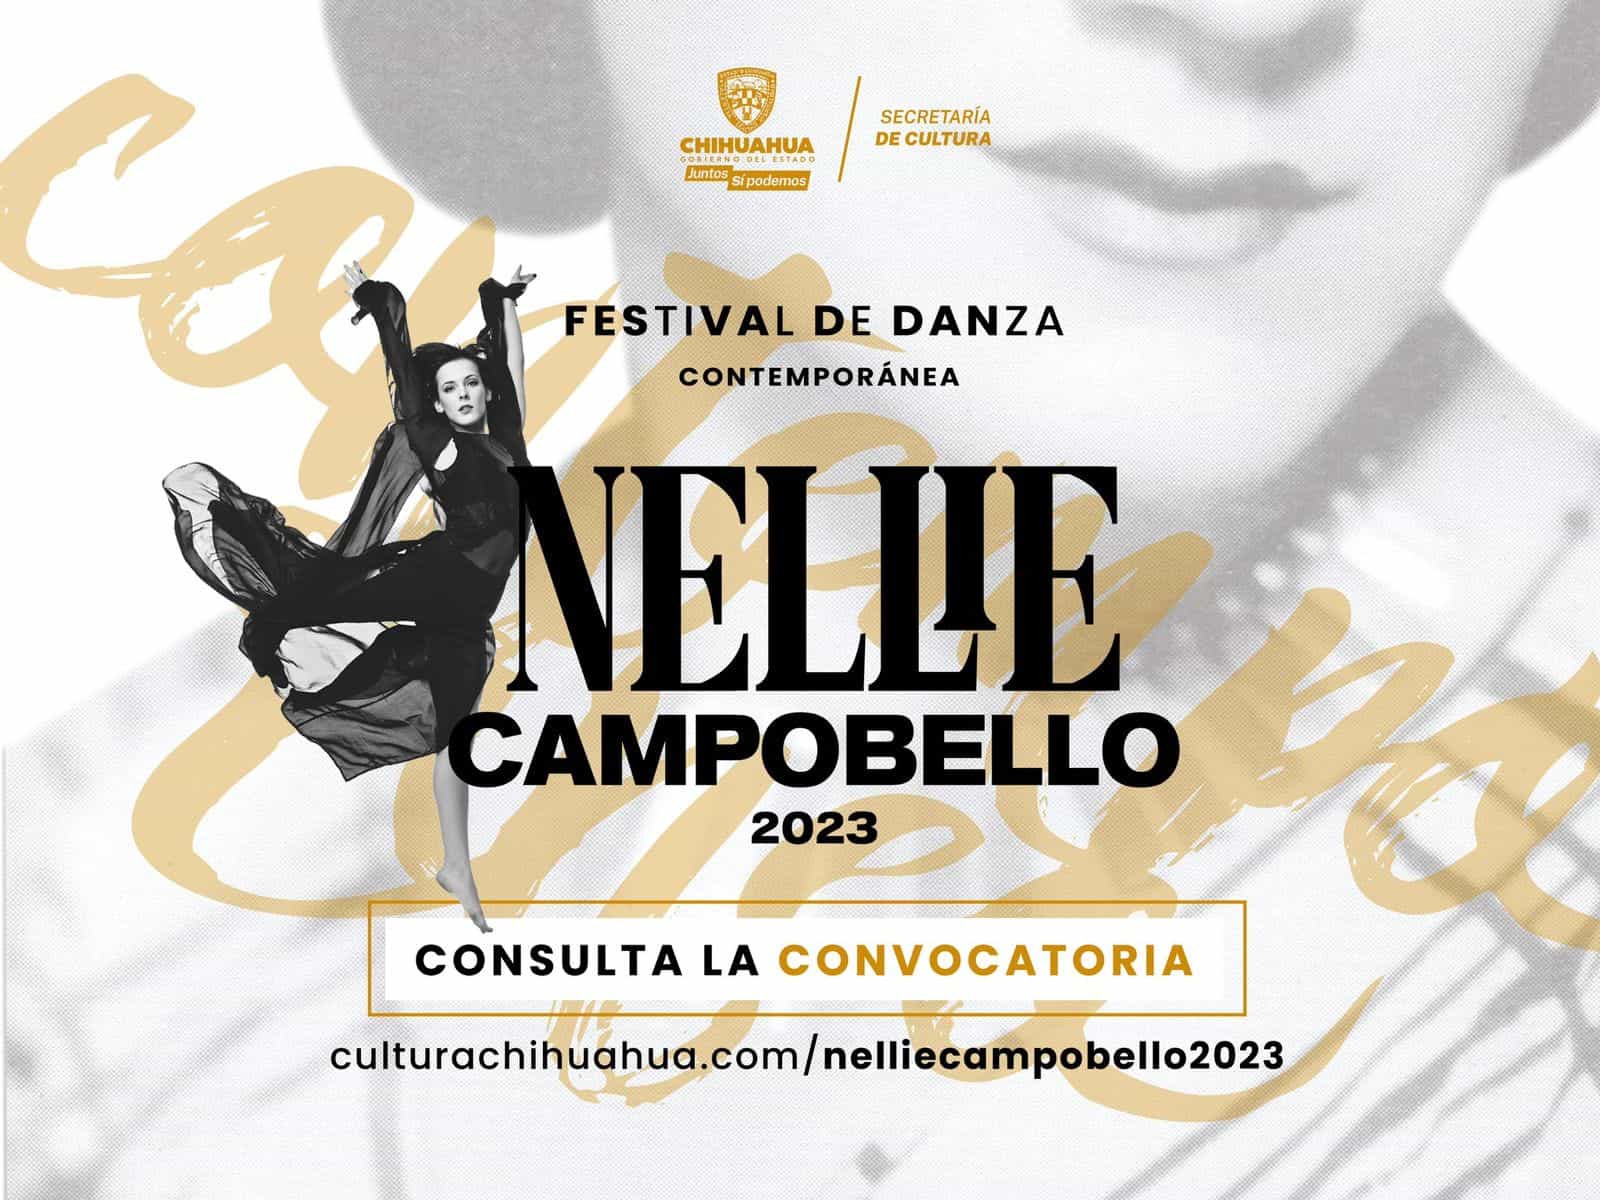 Quedan 15 días para participar en la convocatoria Nellie Campobello 2023